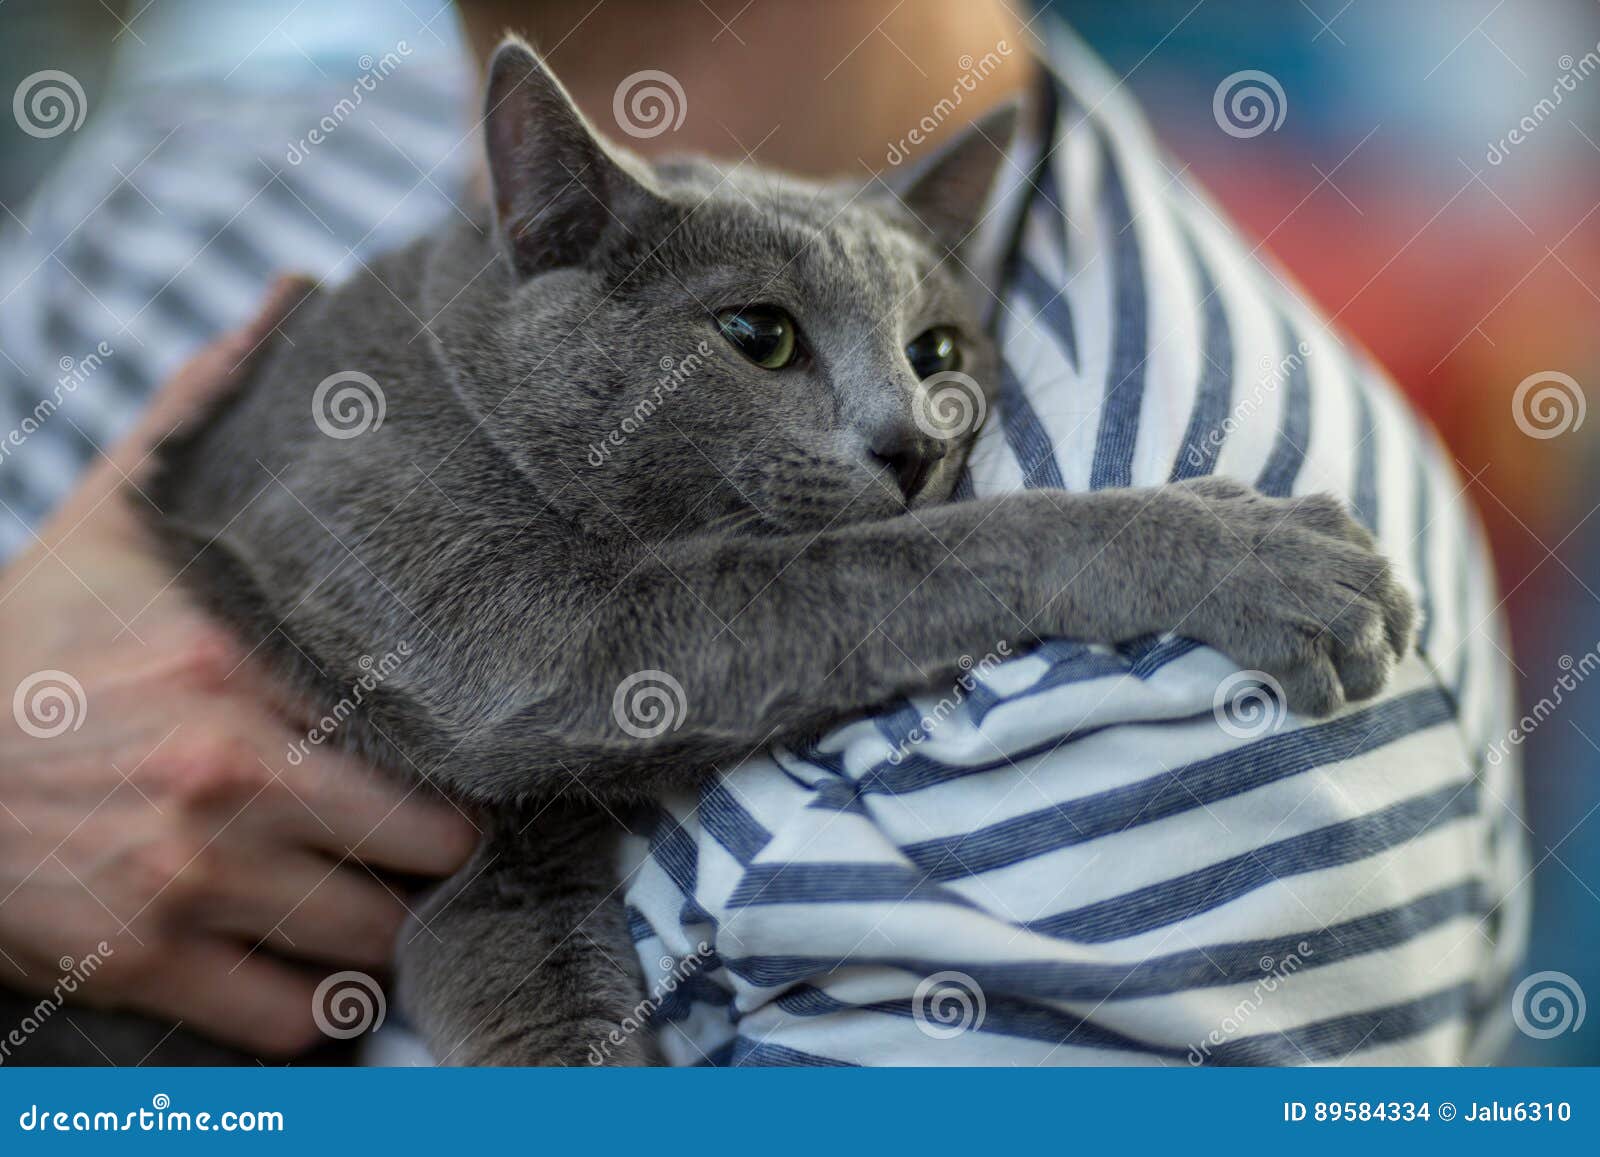 russian blue cat portrai